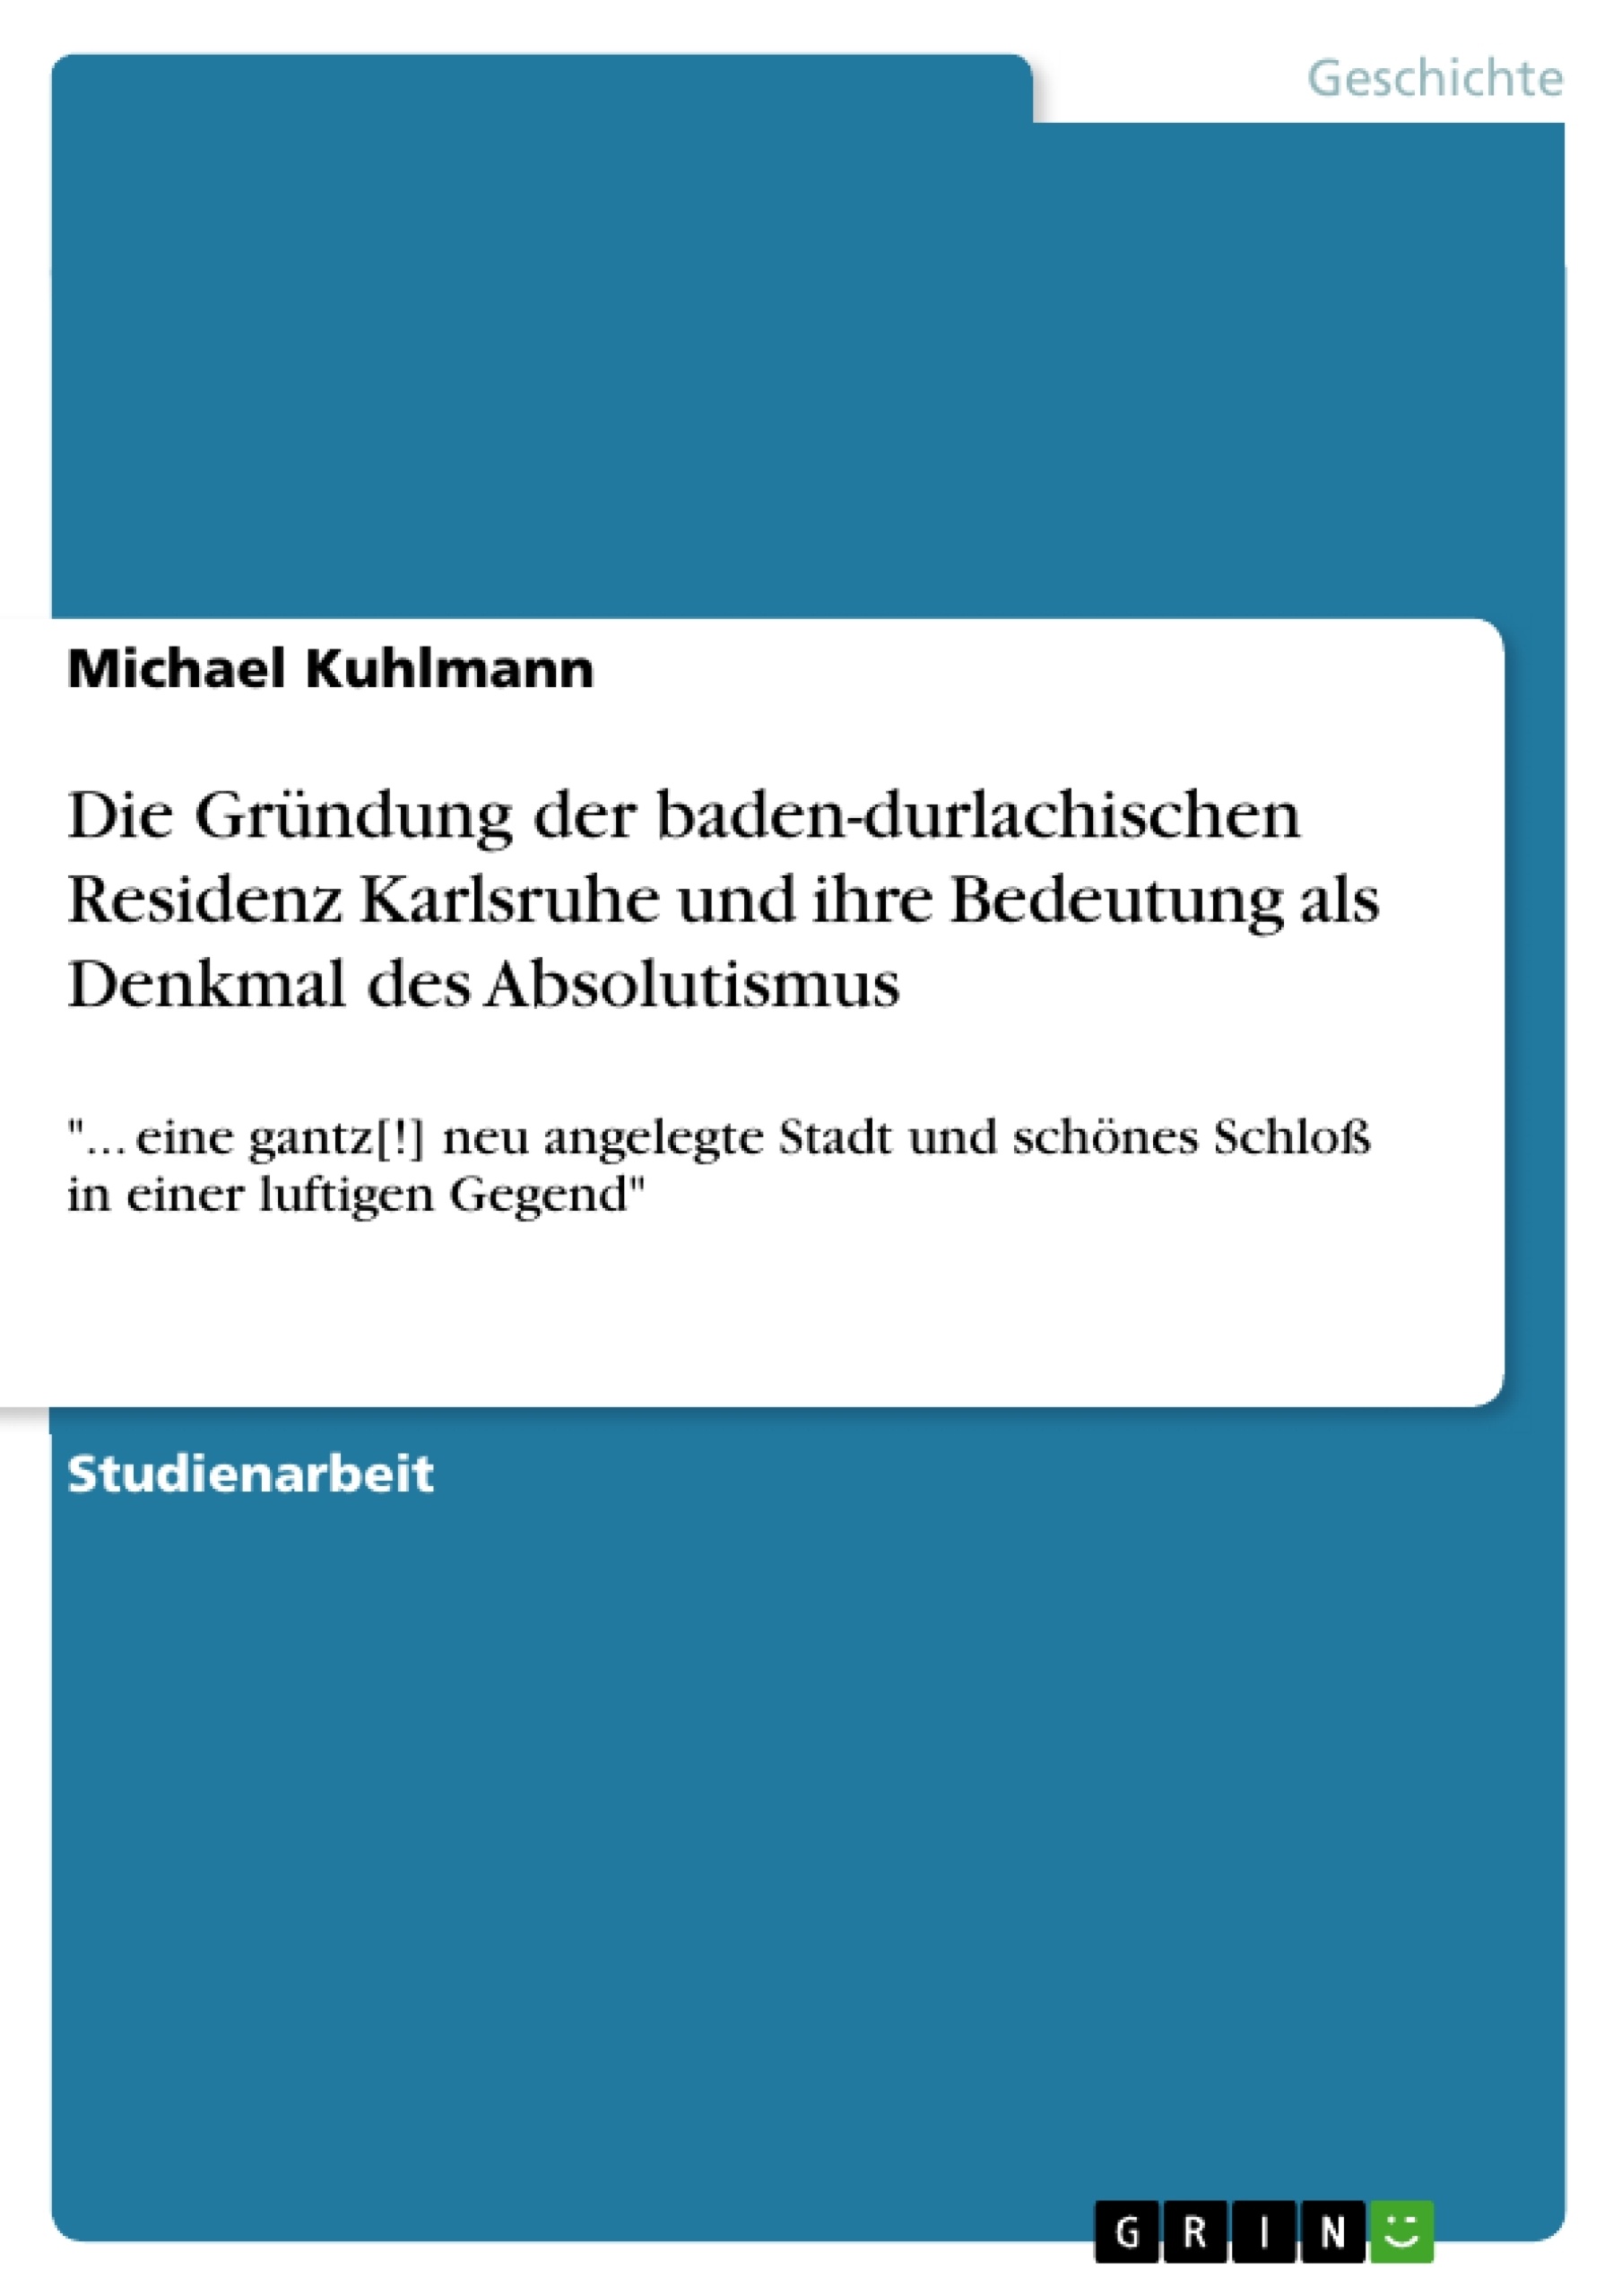 Title: Die Gründung der baden-durlachischen Residenz Karlsruhe und ihre Bedeutung als Denkmal des Absolutismus